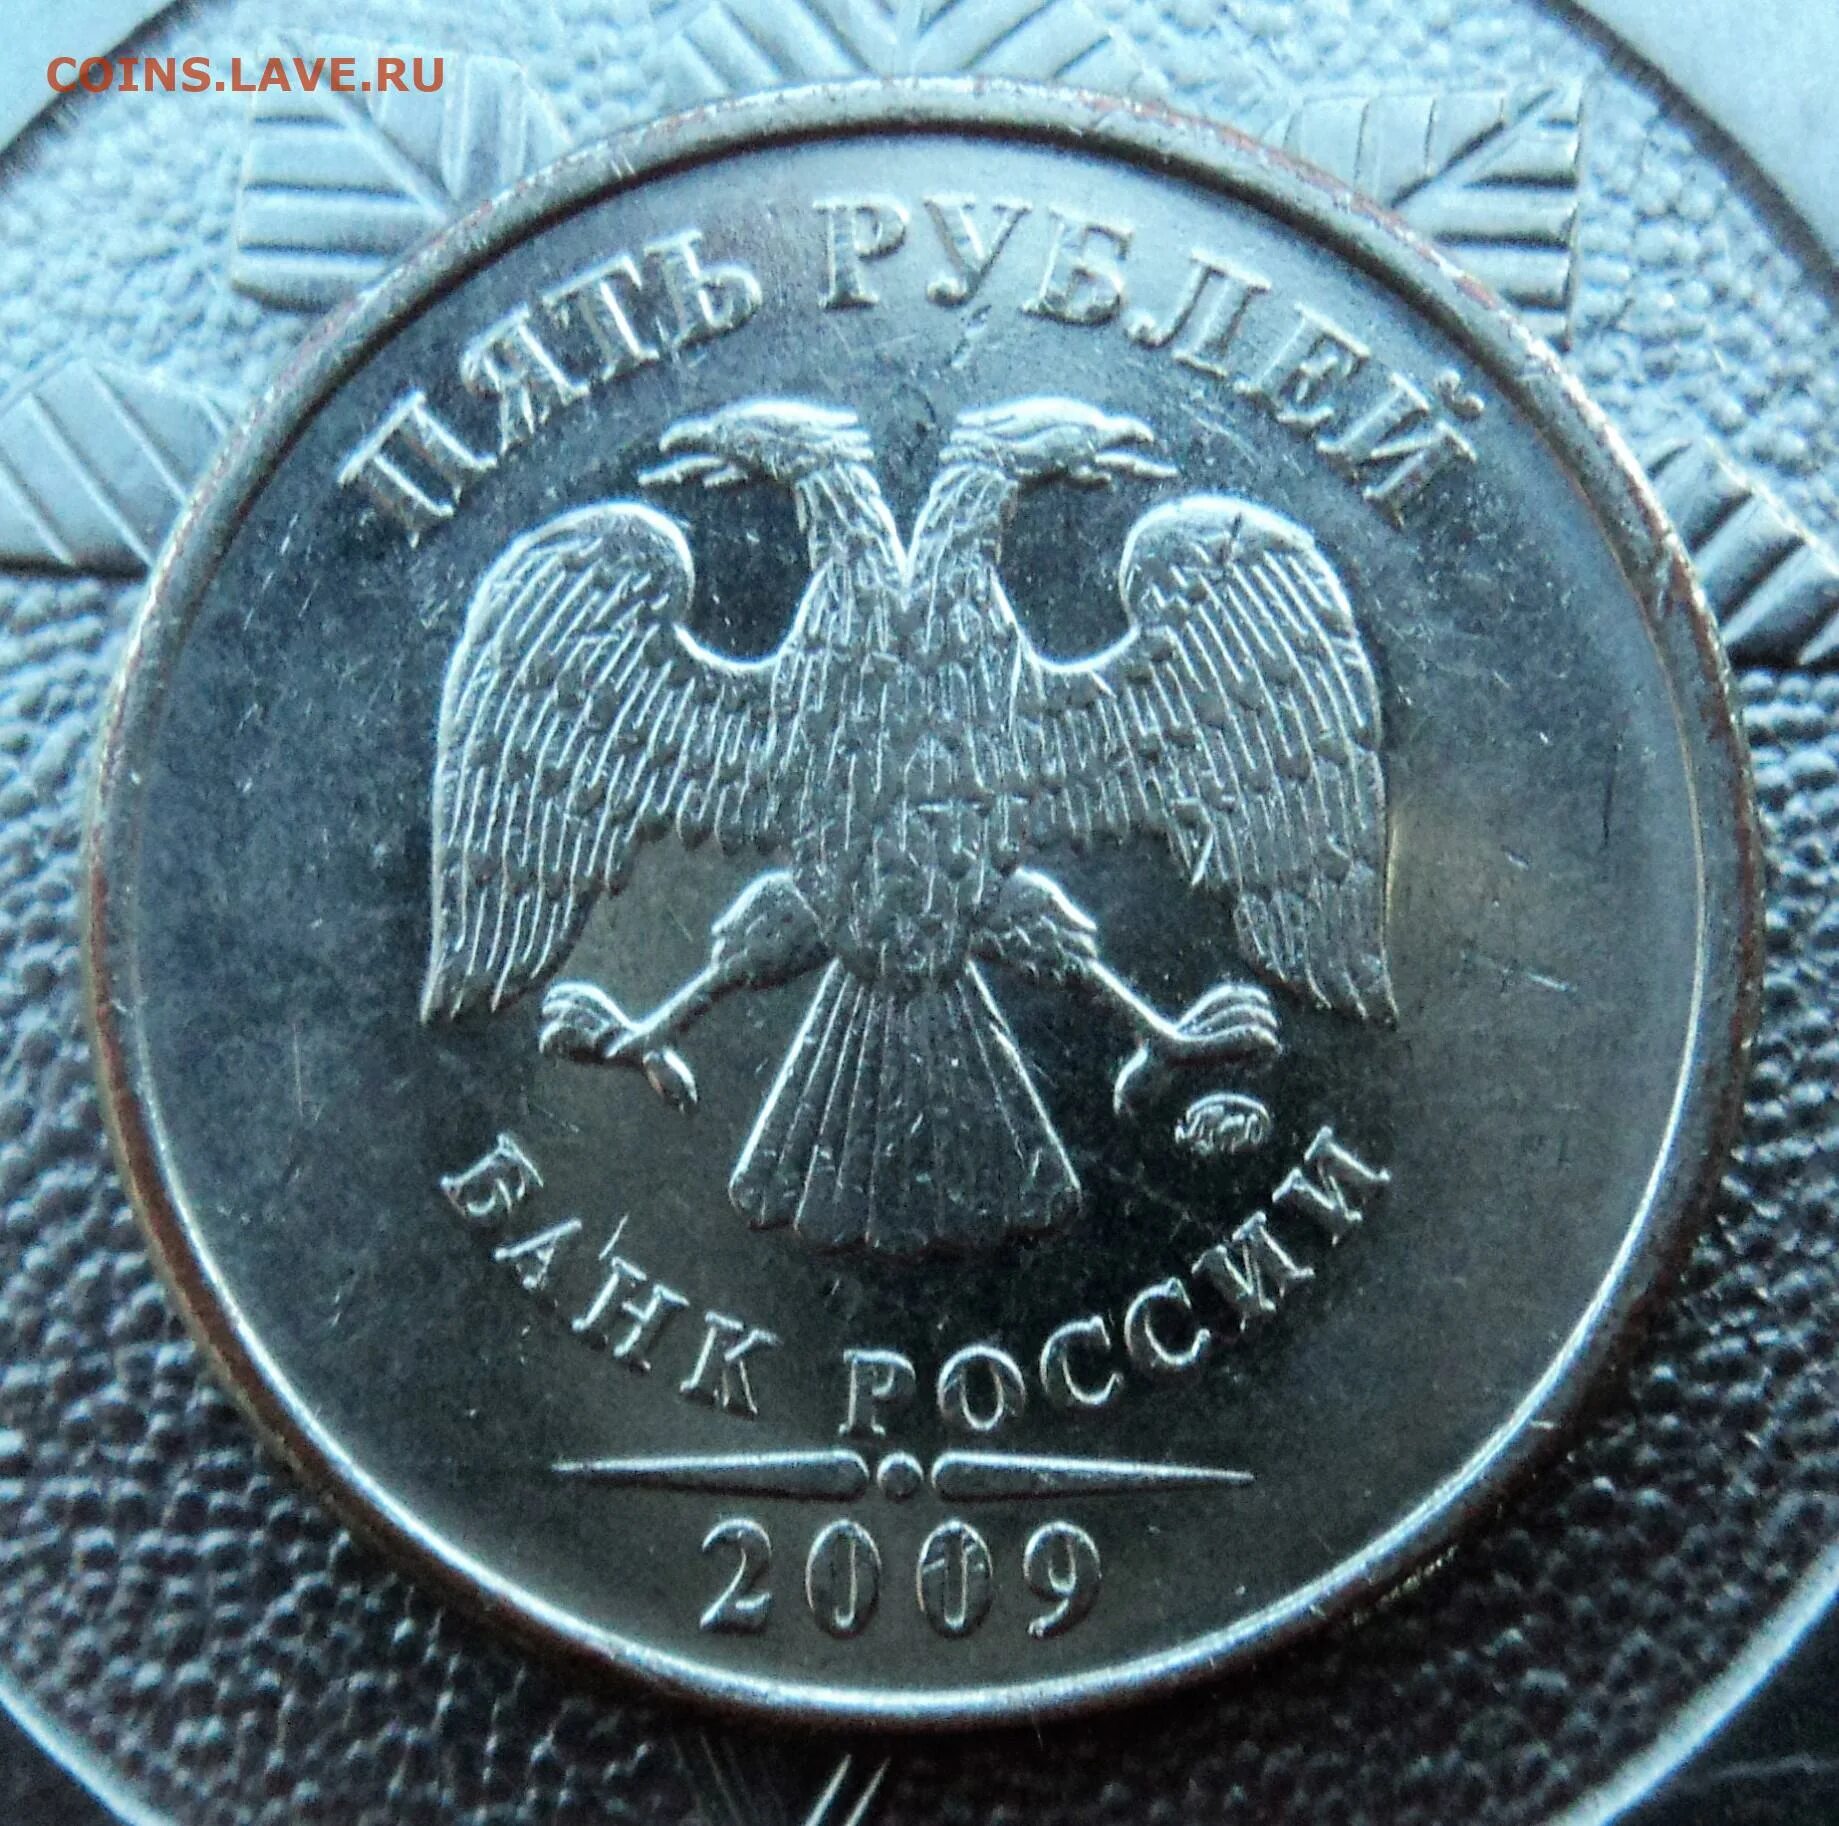 Монета с орлом и львом. 5 Рублей 2009 раскол. Редкие монеты России 2 рубля 2009 г.